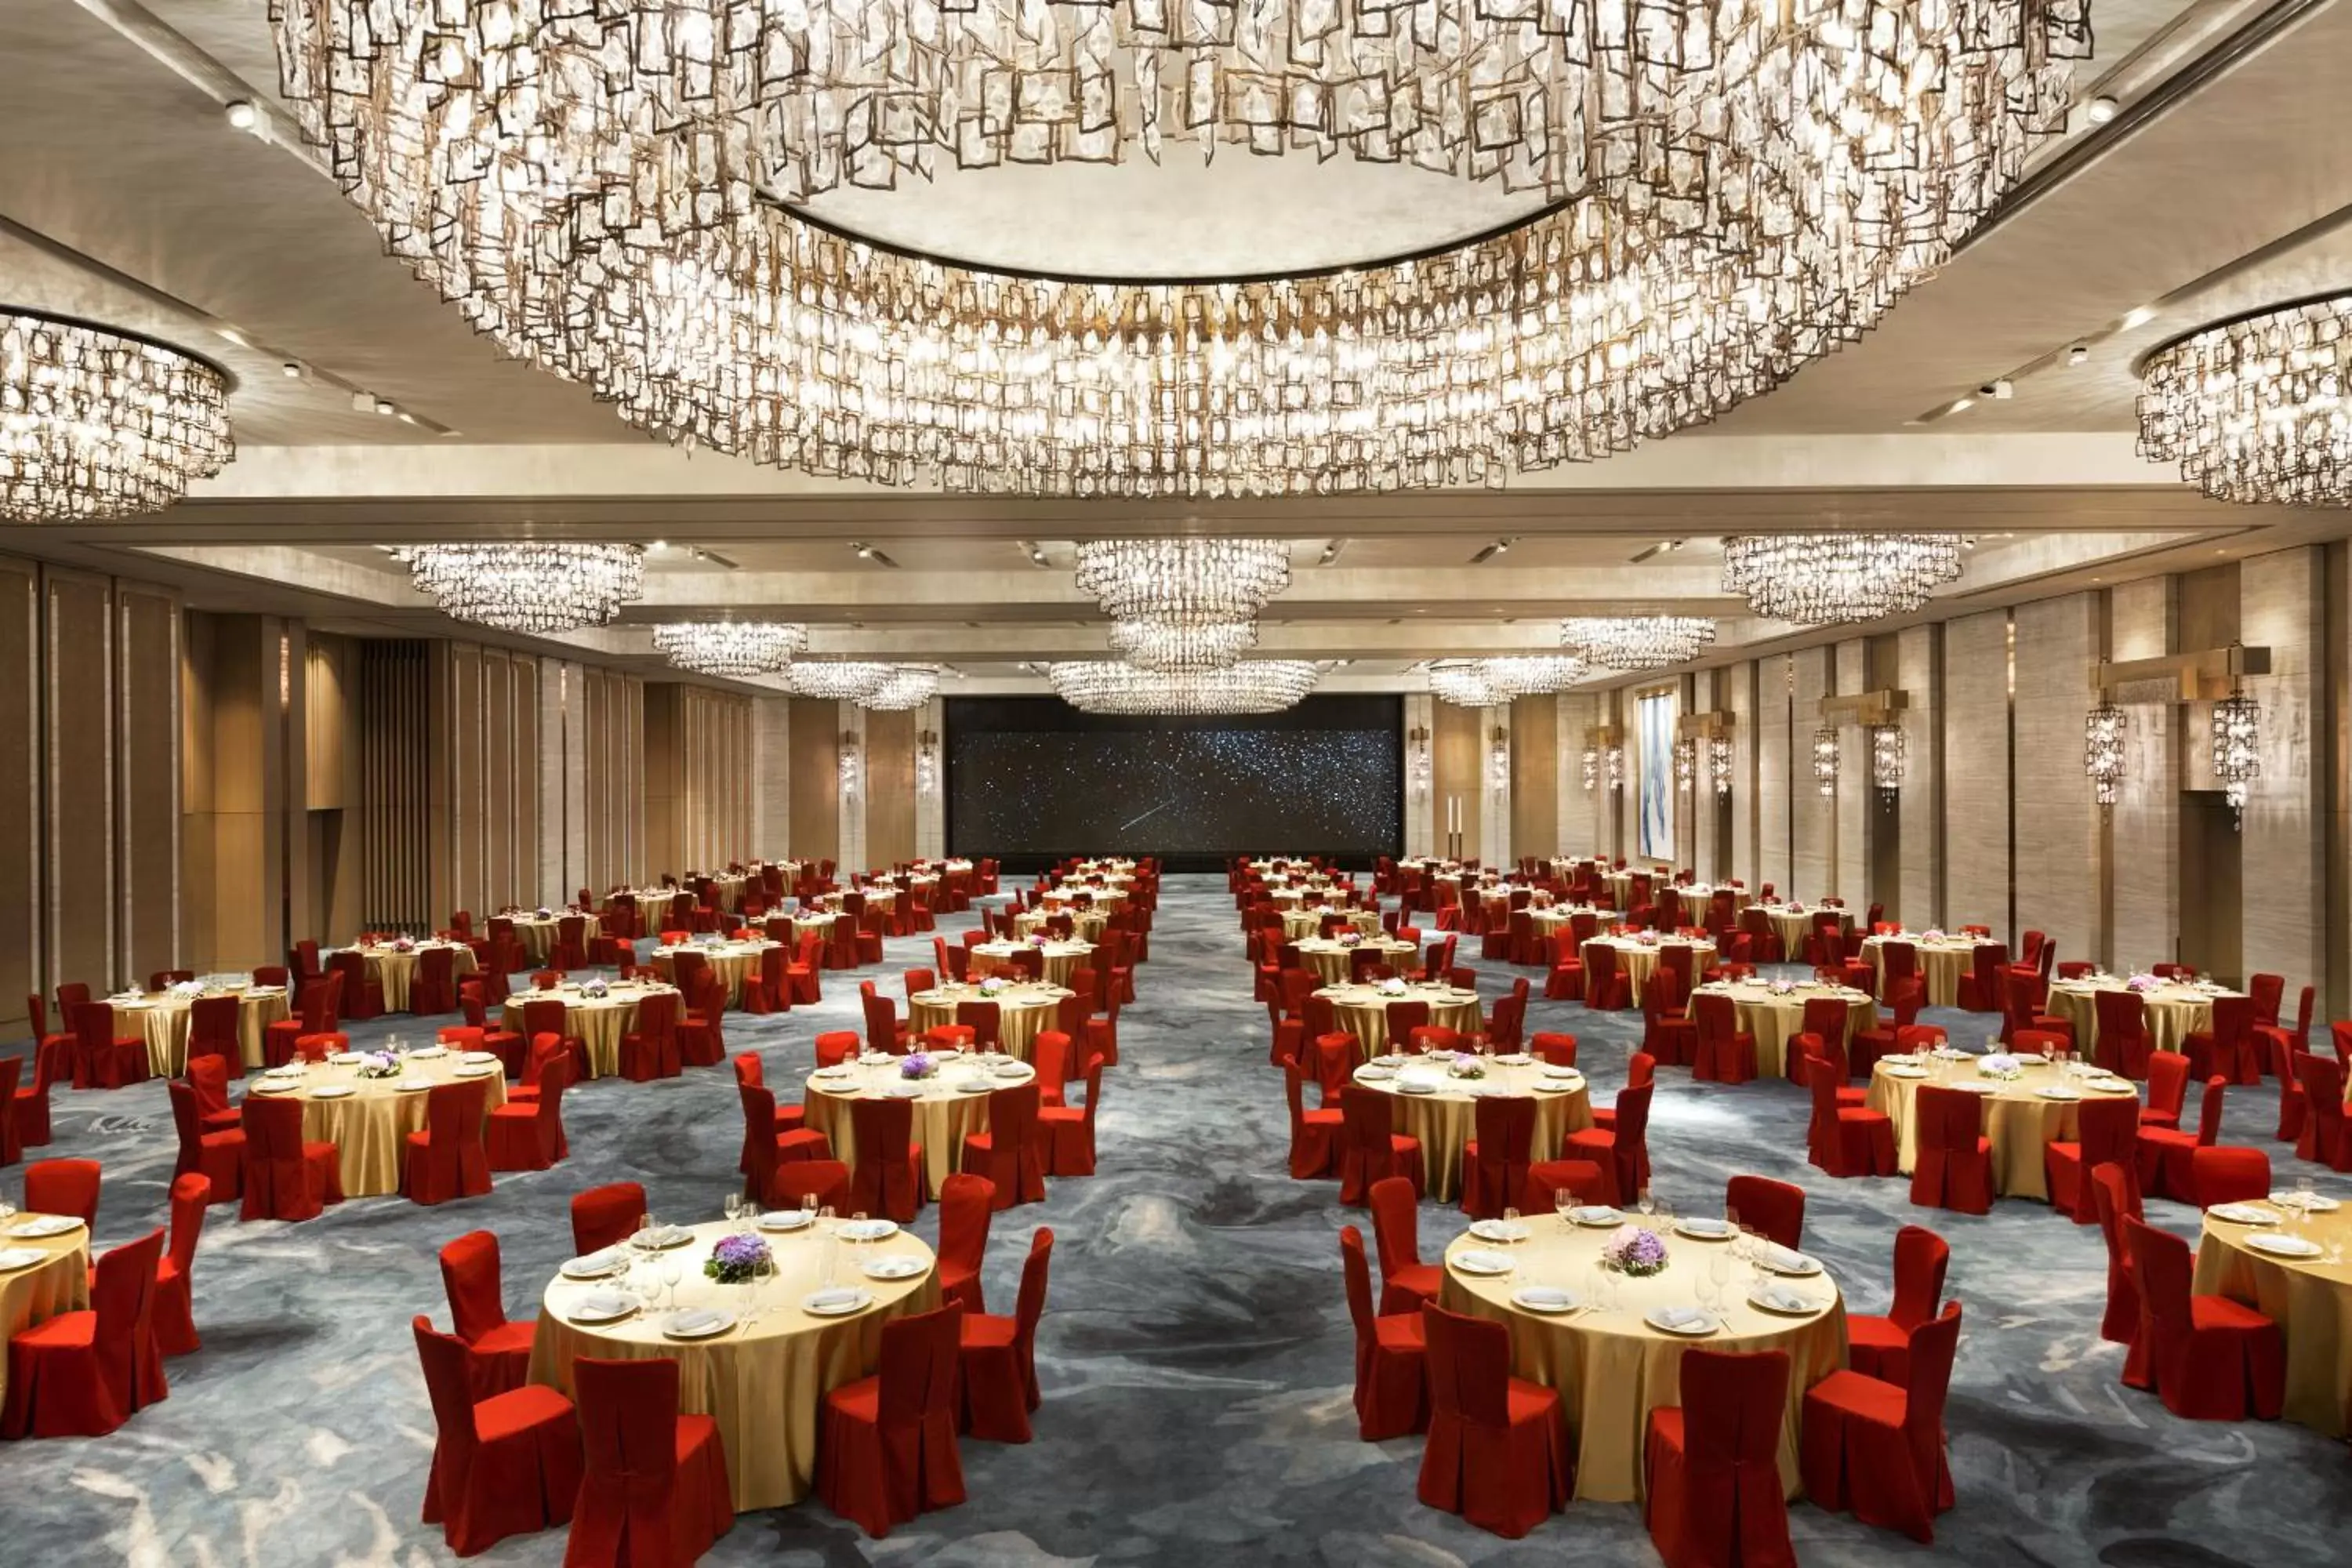 Banquet/Function facilities, Banquet Facilities in Kerry Hotel, Hong Kong